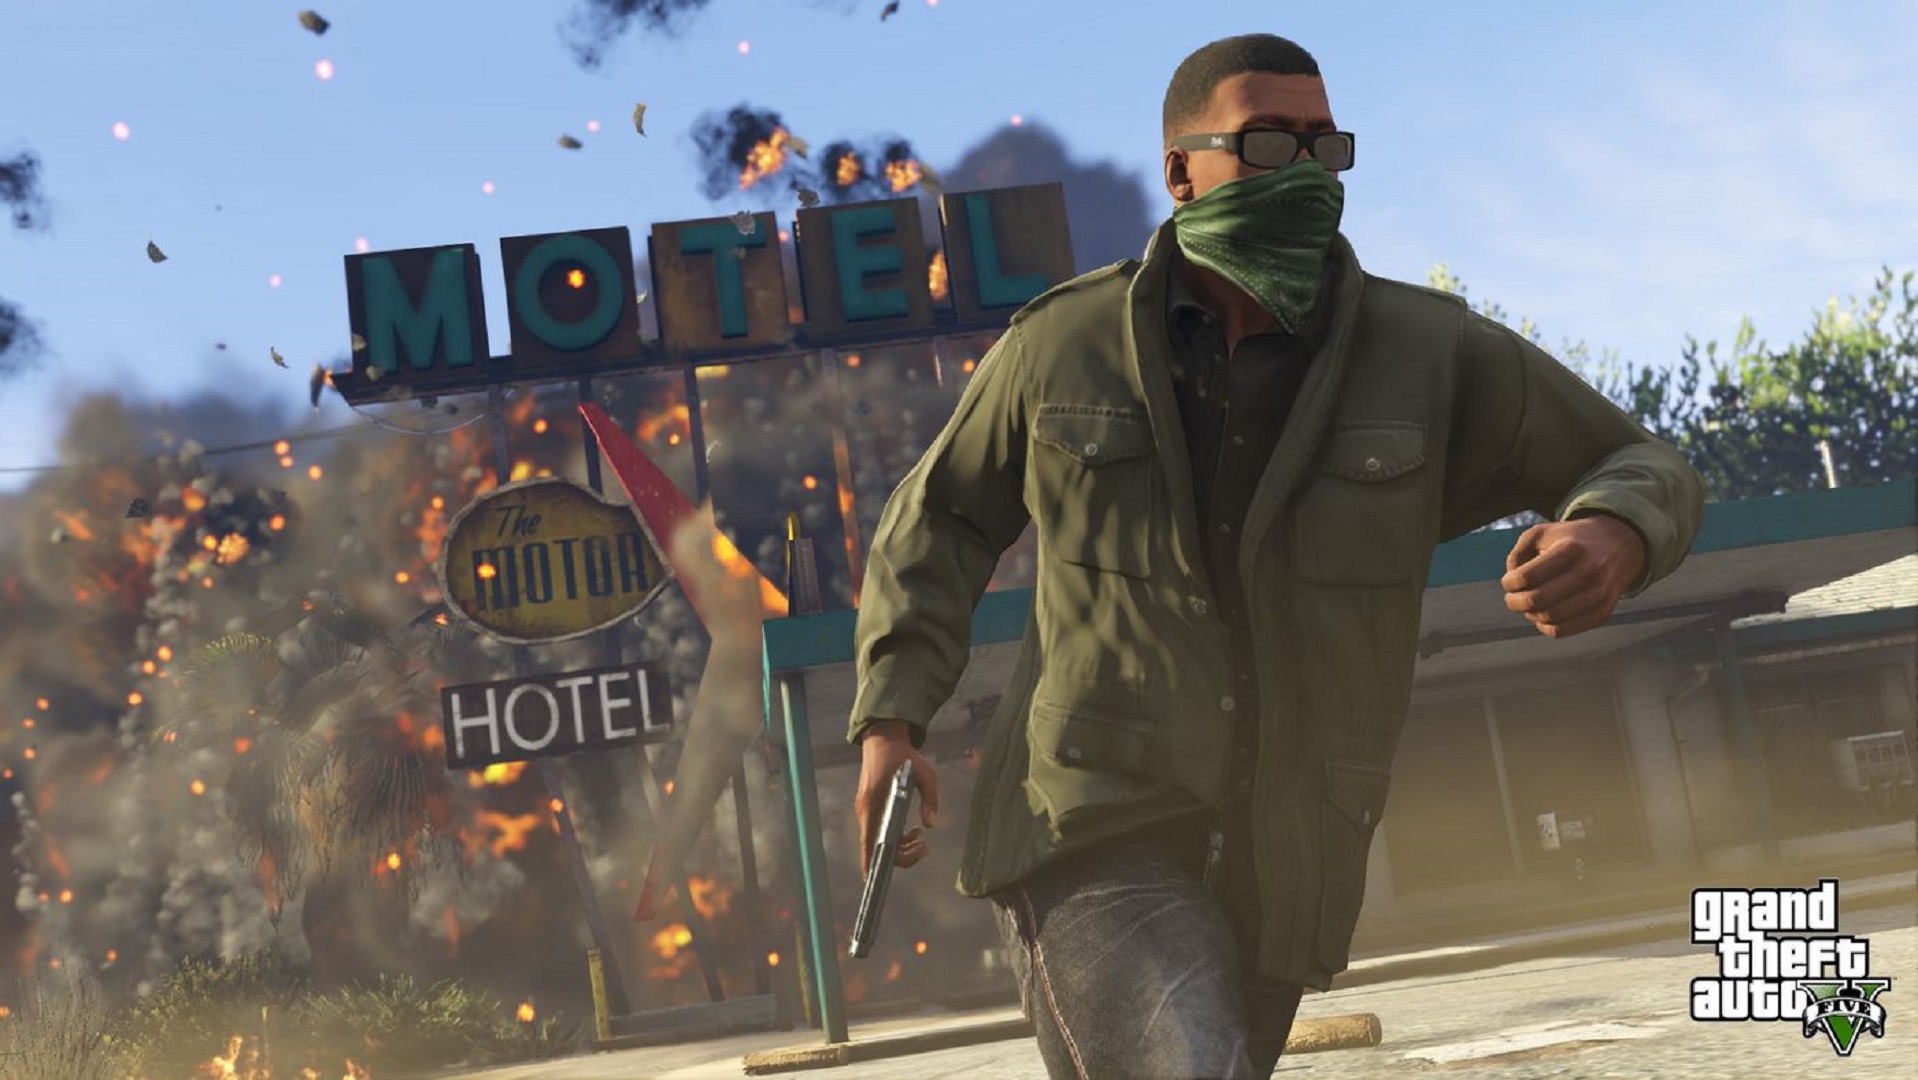 GTA VI' Trailer: Rockstar Fans Despair at 2025 Release Delay